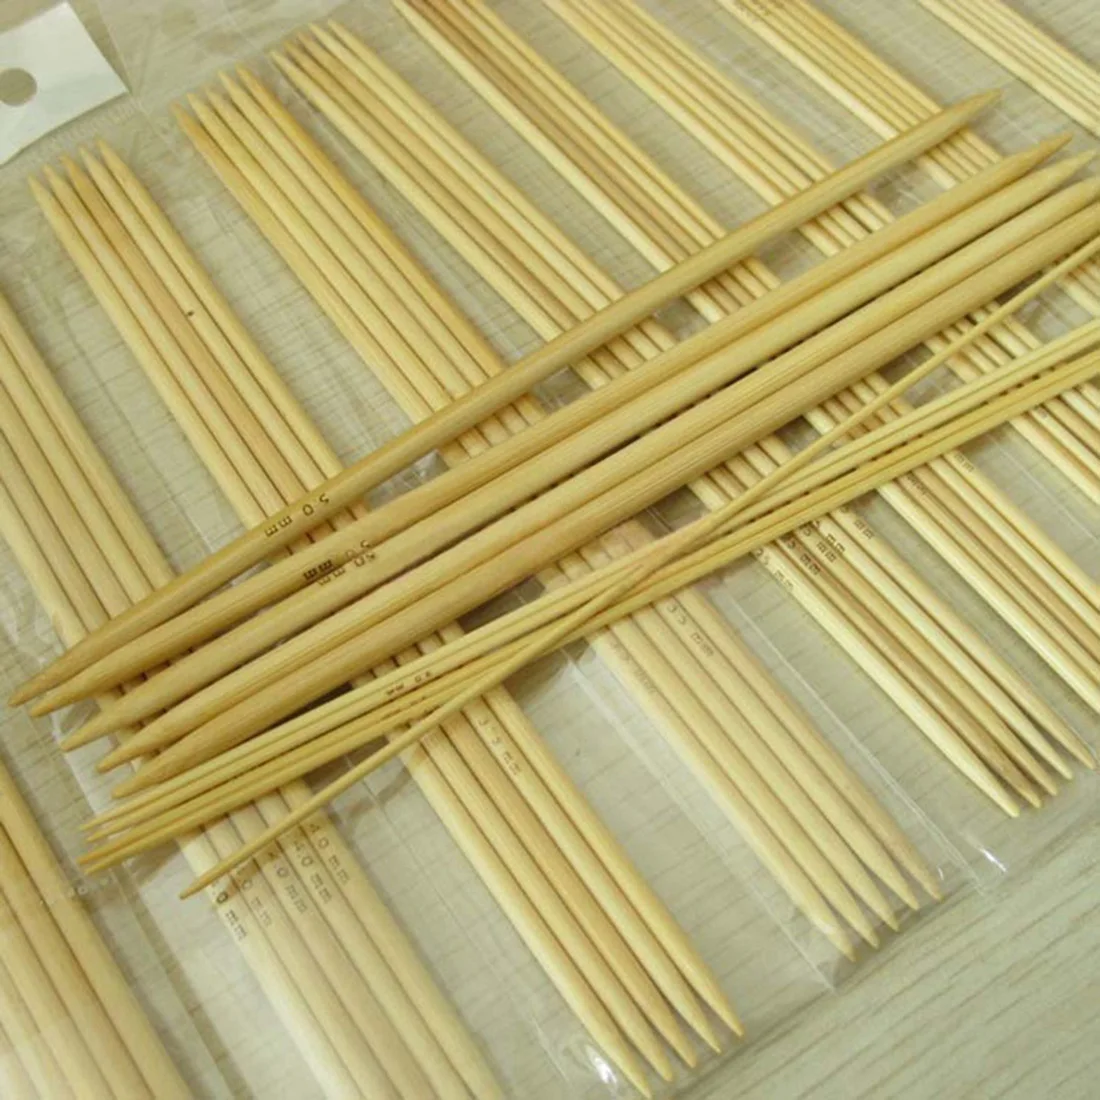 Новинка 11 Размер s 5 ''13 см гладкие ручки двойные острые вязальные спицы из карбонизированного бамбука ручной работы набор инструментов Размер 2,0-5,0 мм